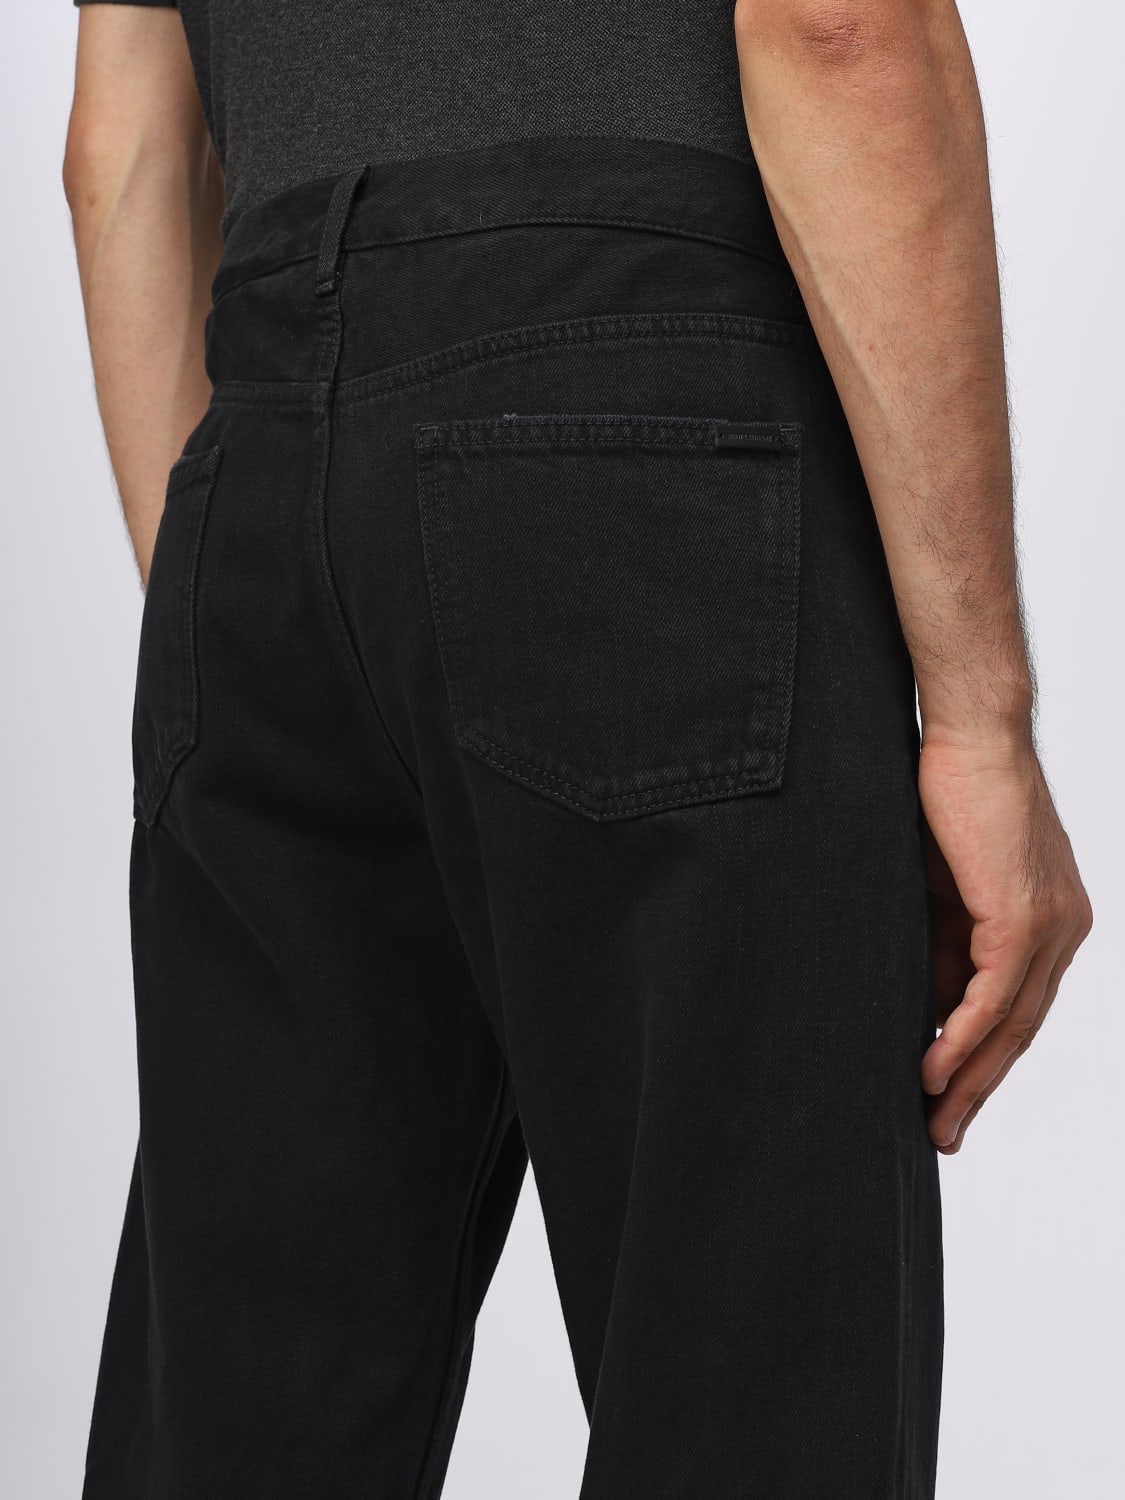 SAINT LAURENT: jeans for man - Black | Saint Laurent jeans 757190Y16PD ...